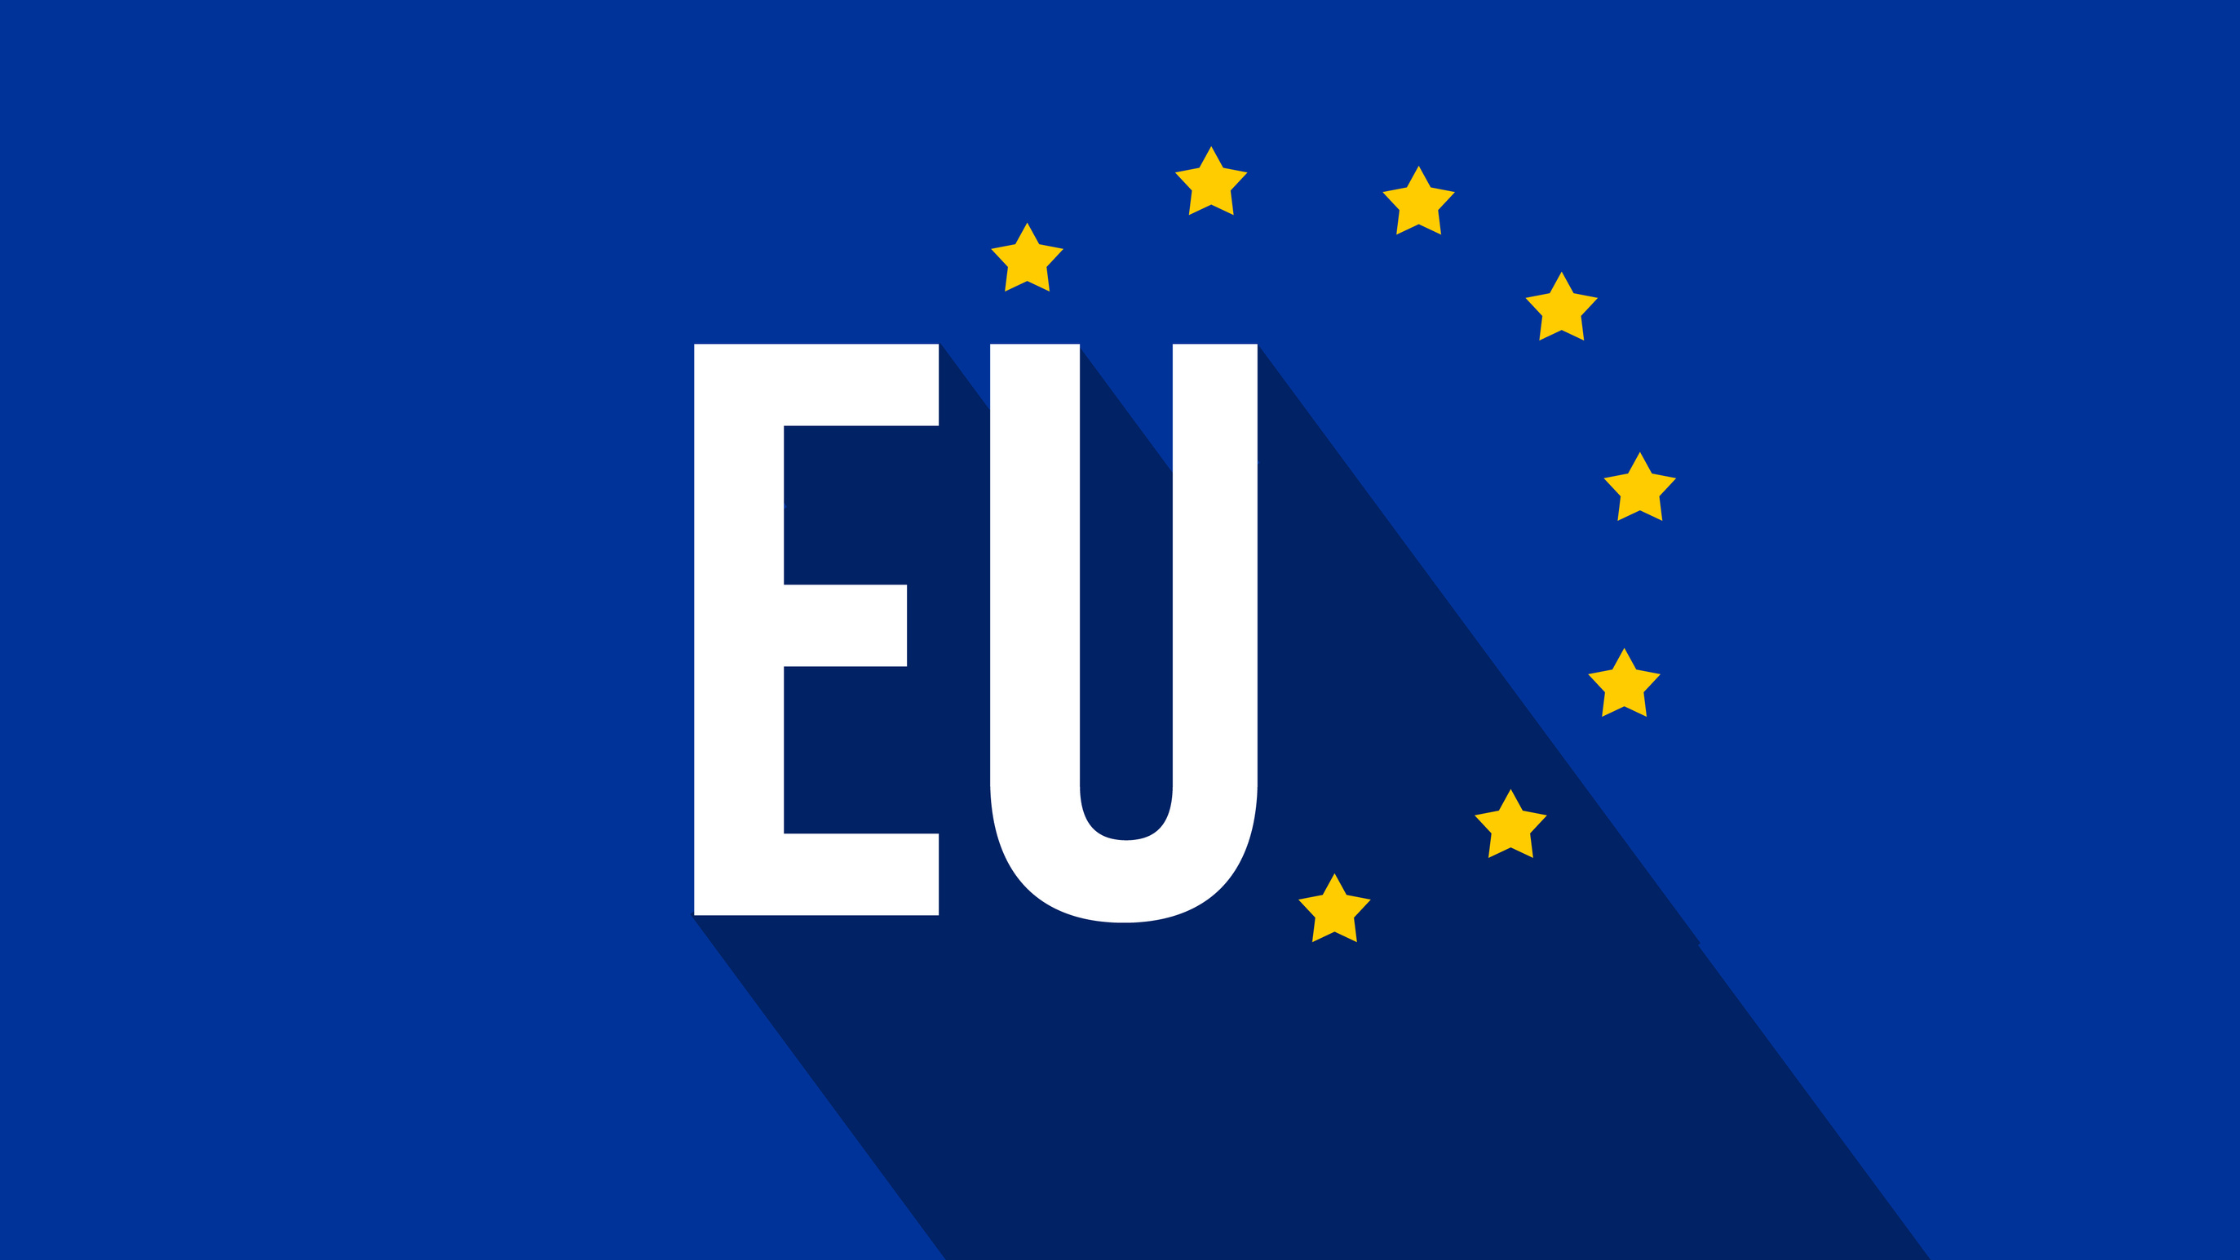 【越境EC】EU加盟国、北アイルランド、ノルウェー、スイス宛にHSコードなど貨物詳細の提供が必須に！